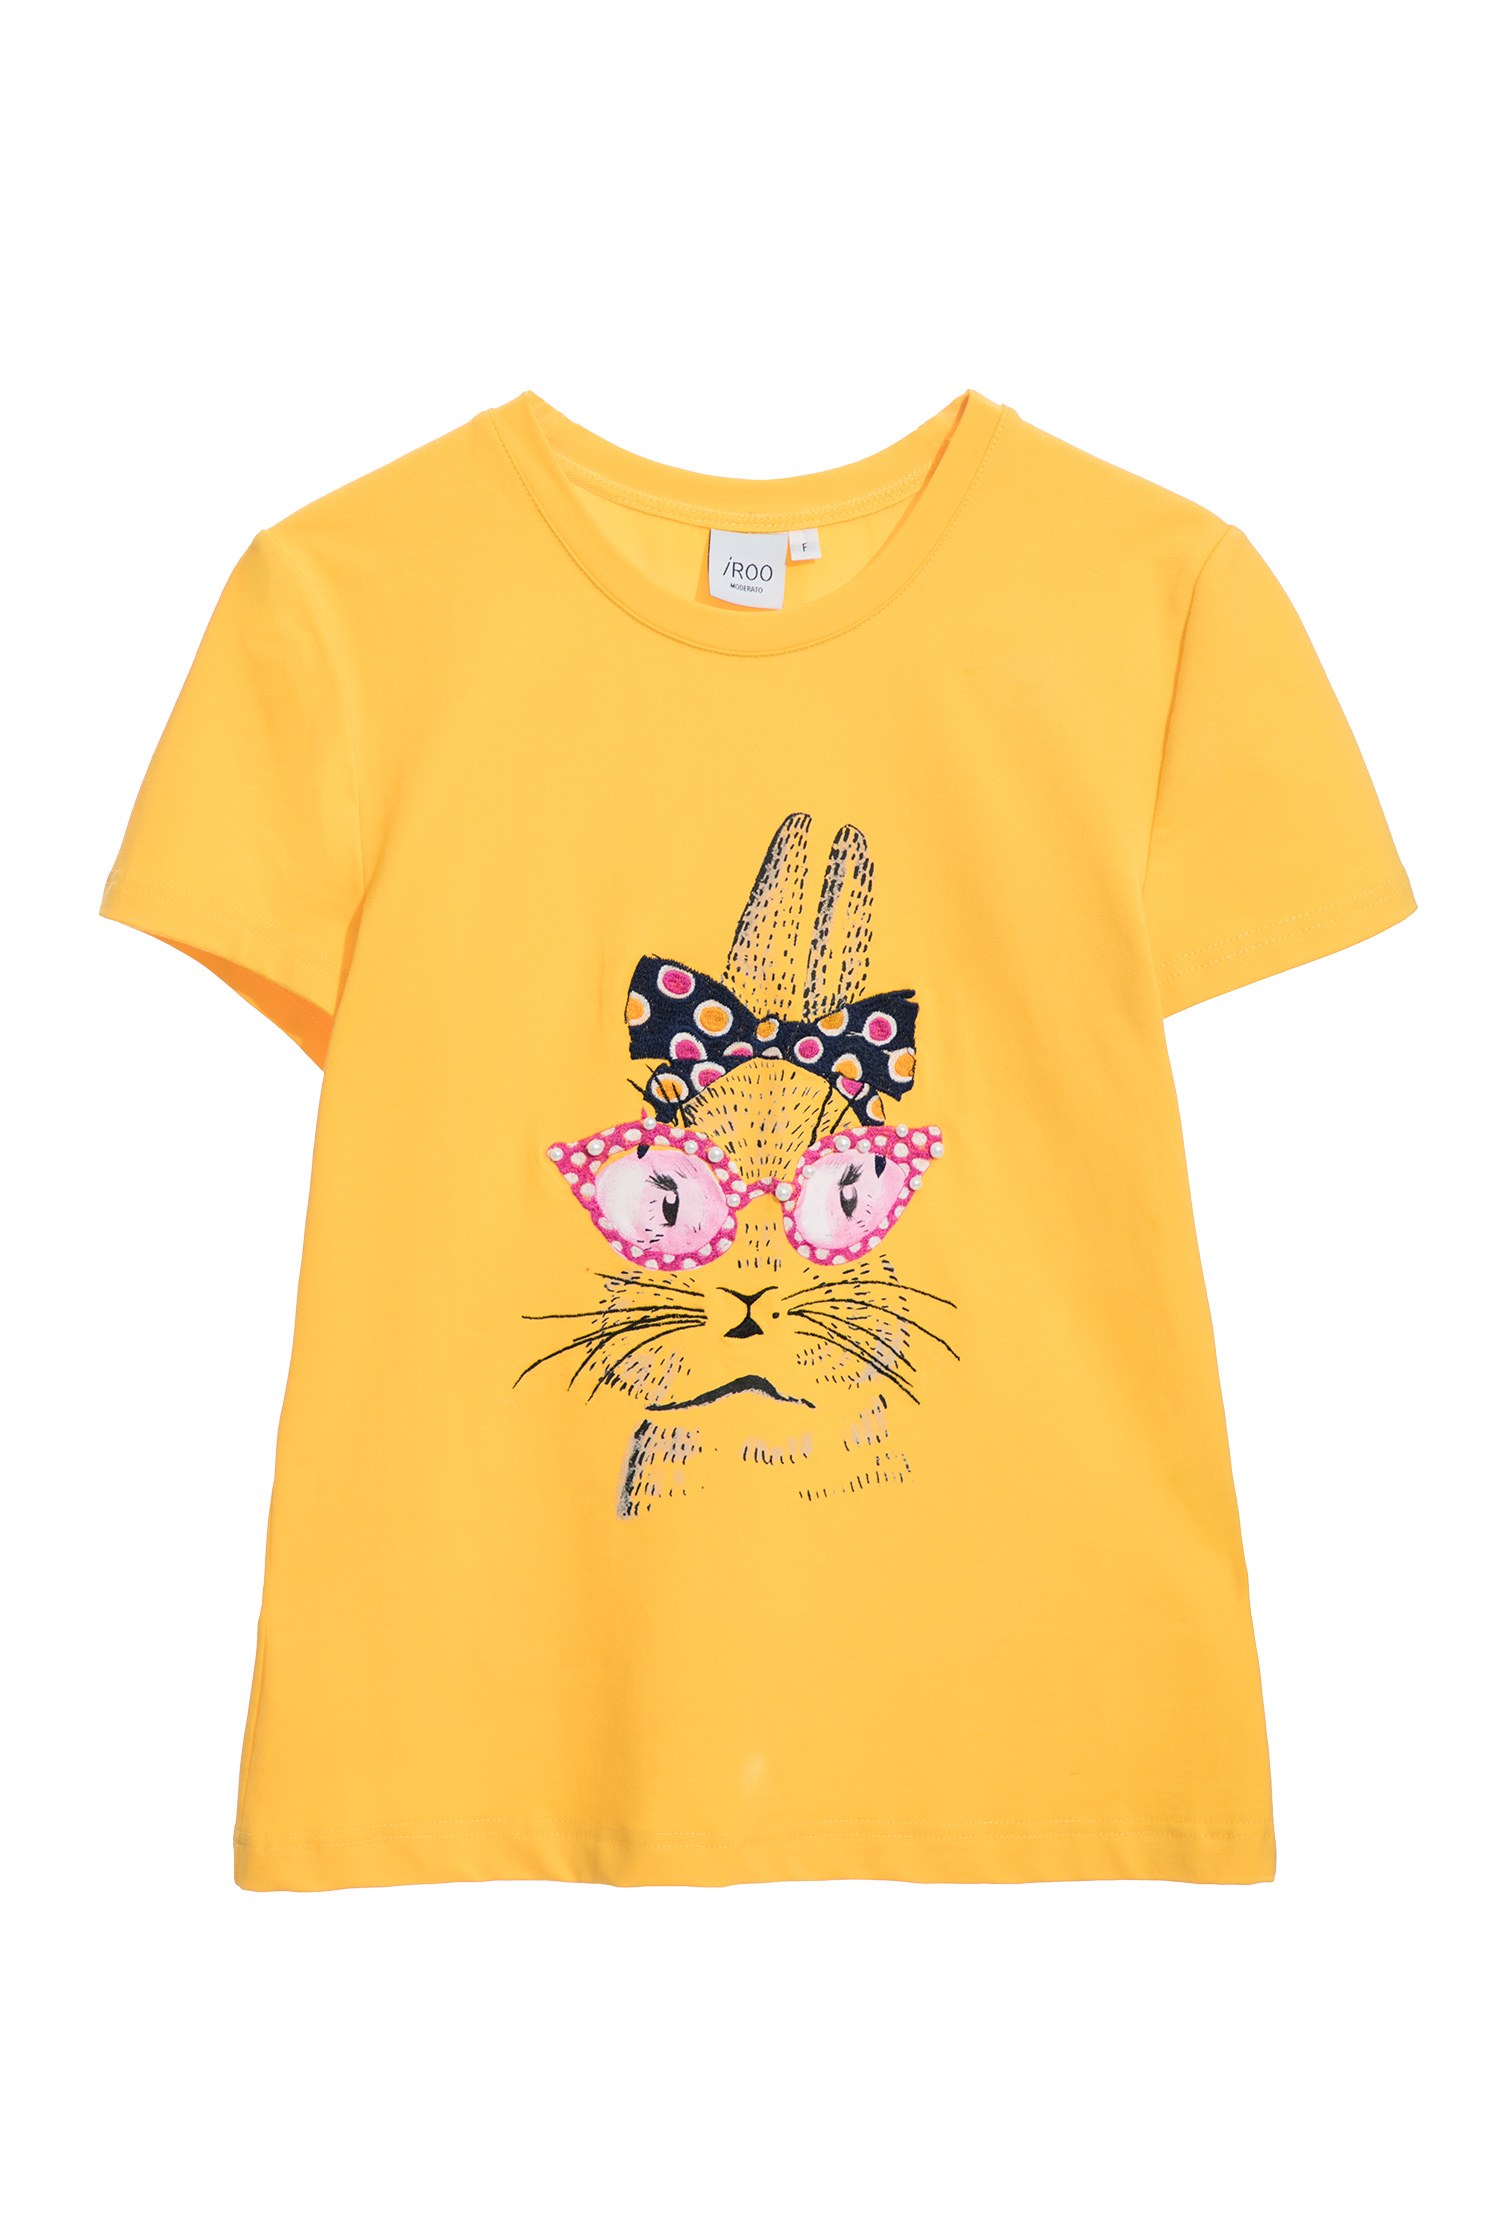 戴貓眼鏡兔子印花T恤戴貓眼鏡兔子印花T恤,T-Shirt,T恤,上衣,刺繡,春夏穿搭,蝴蝶結